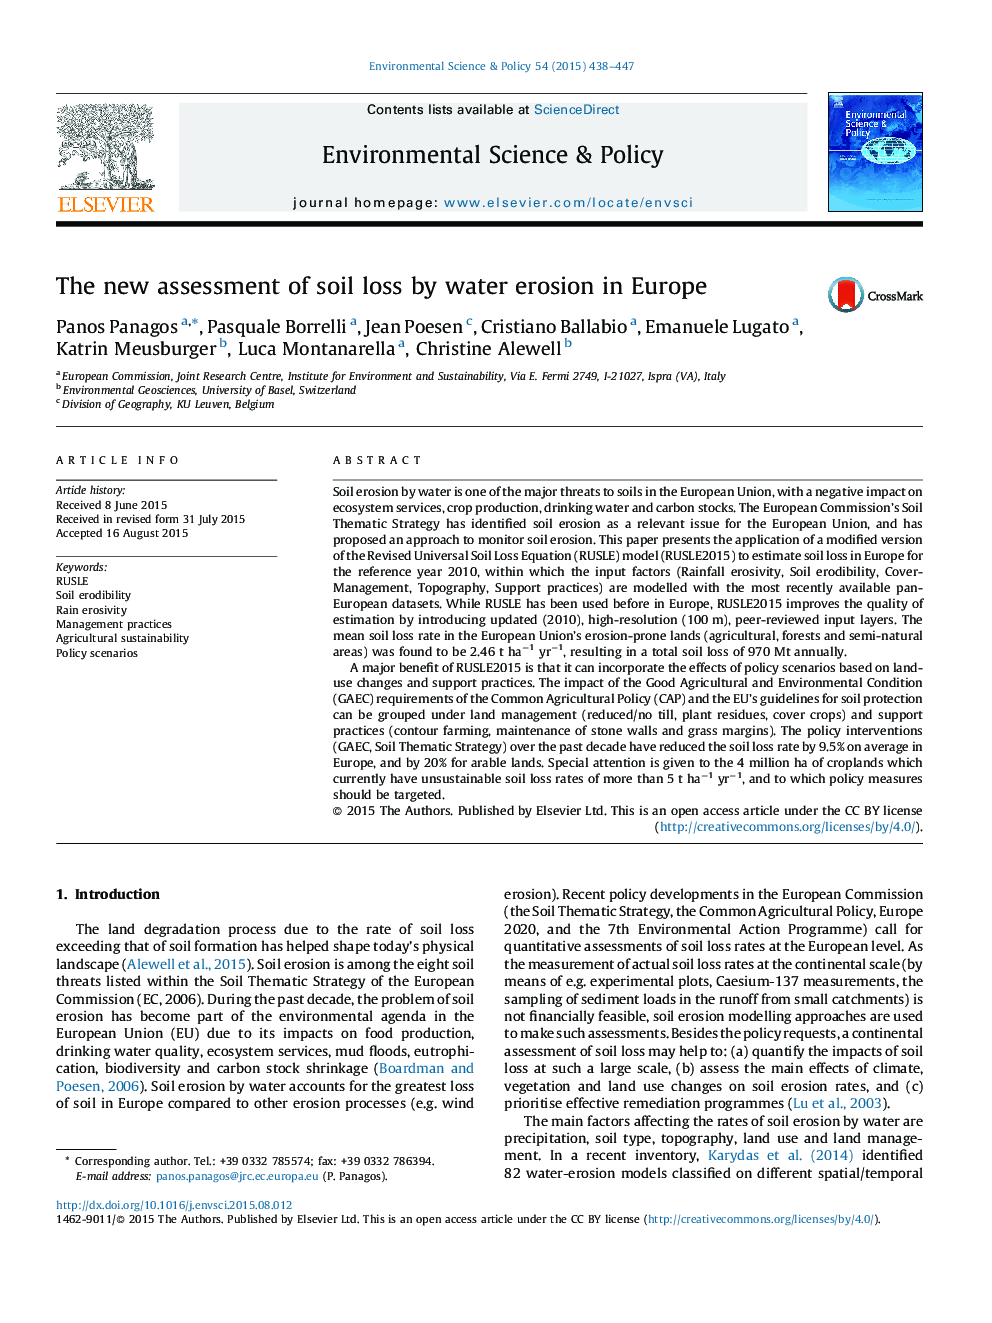 ارزیابی جدید از تخریب خاک توسط فرسایش آب در اروپا 